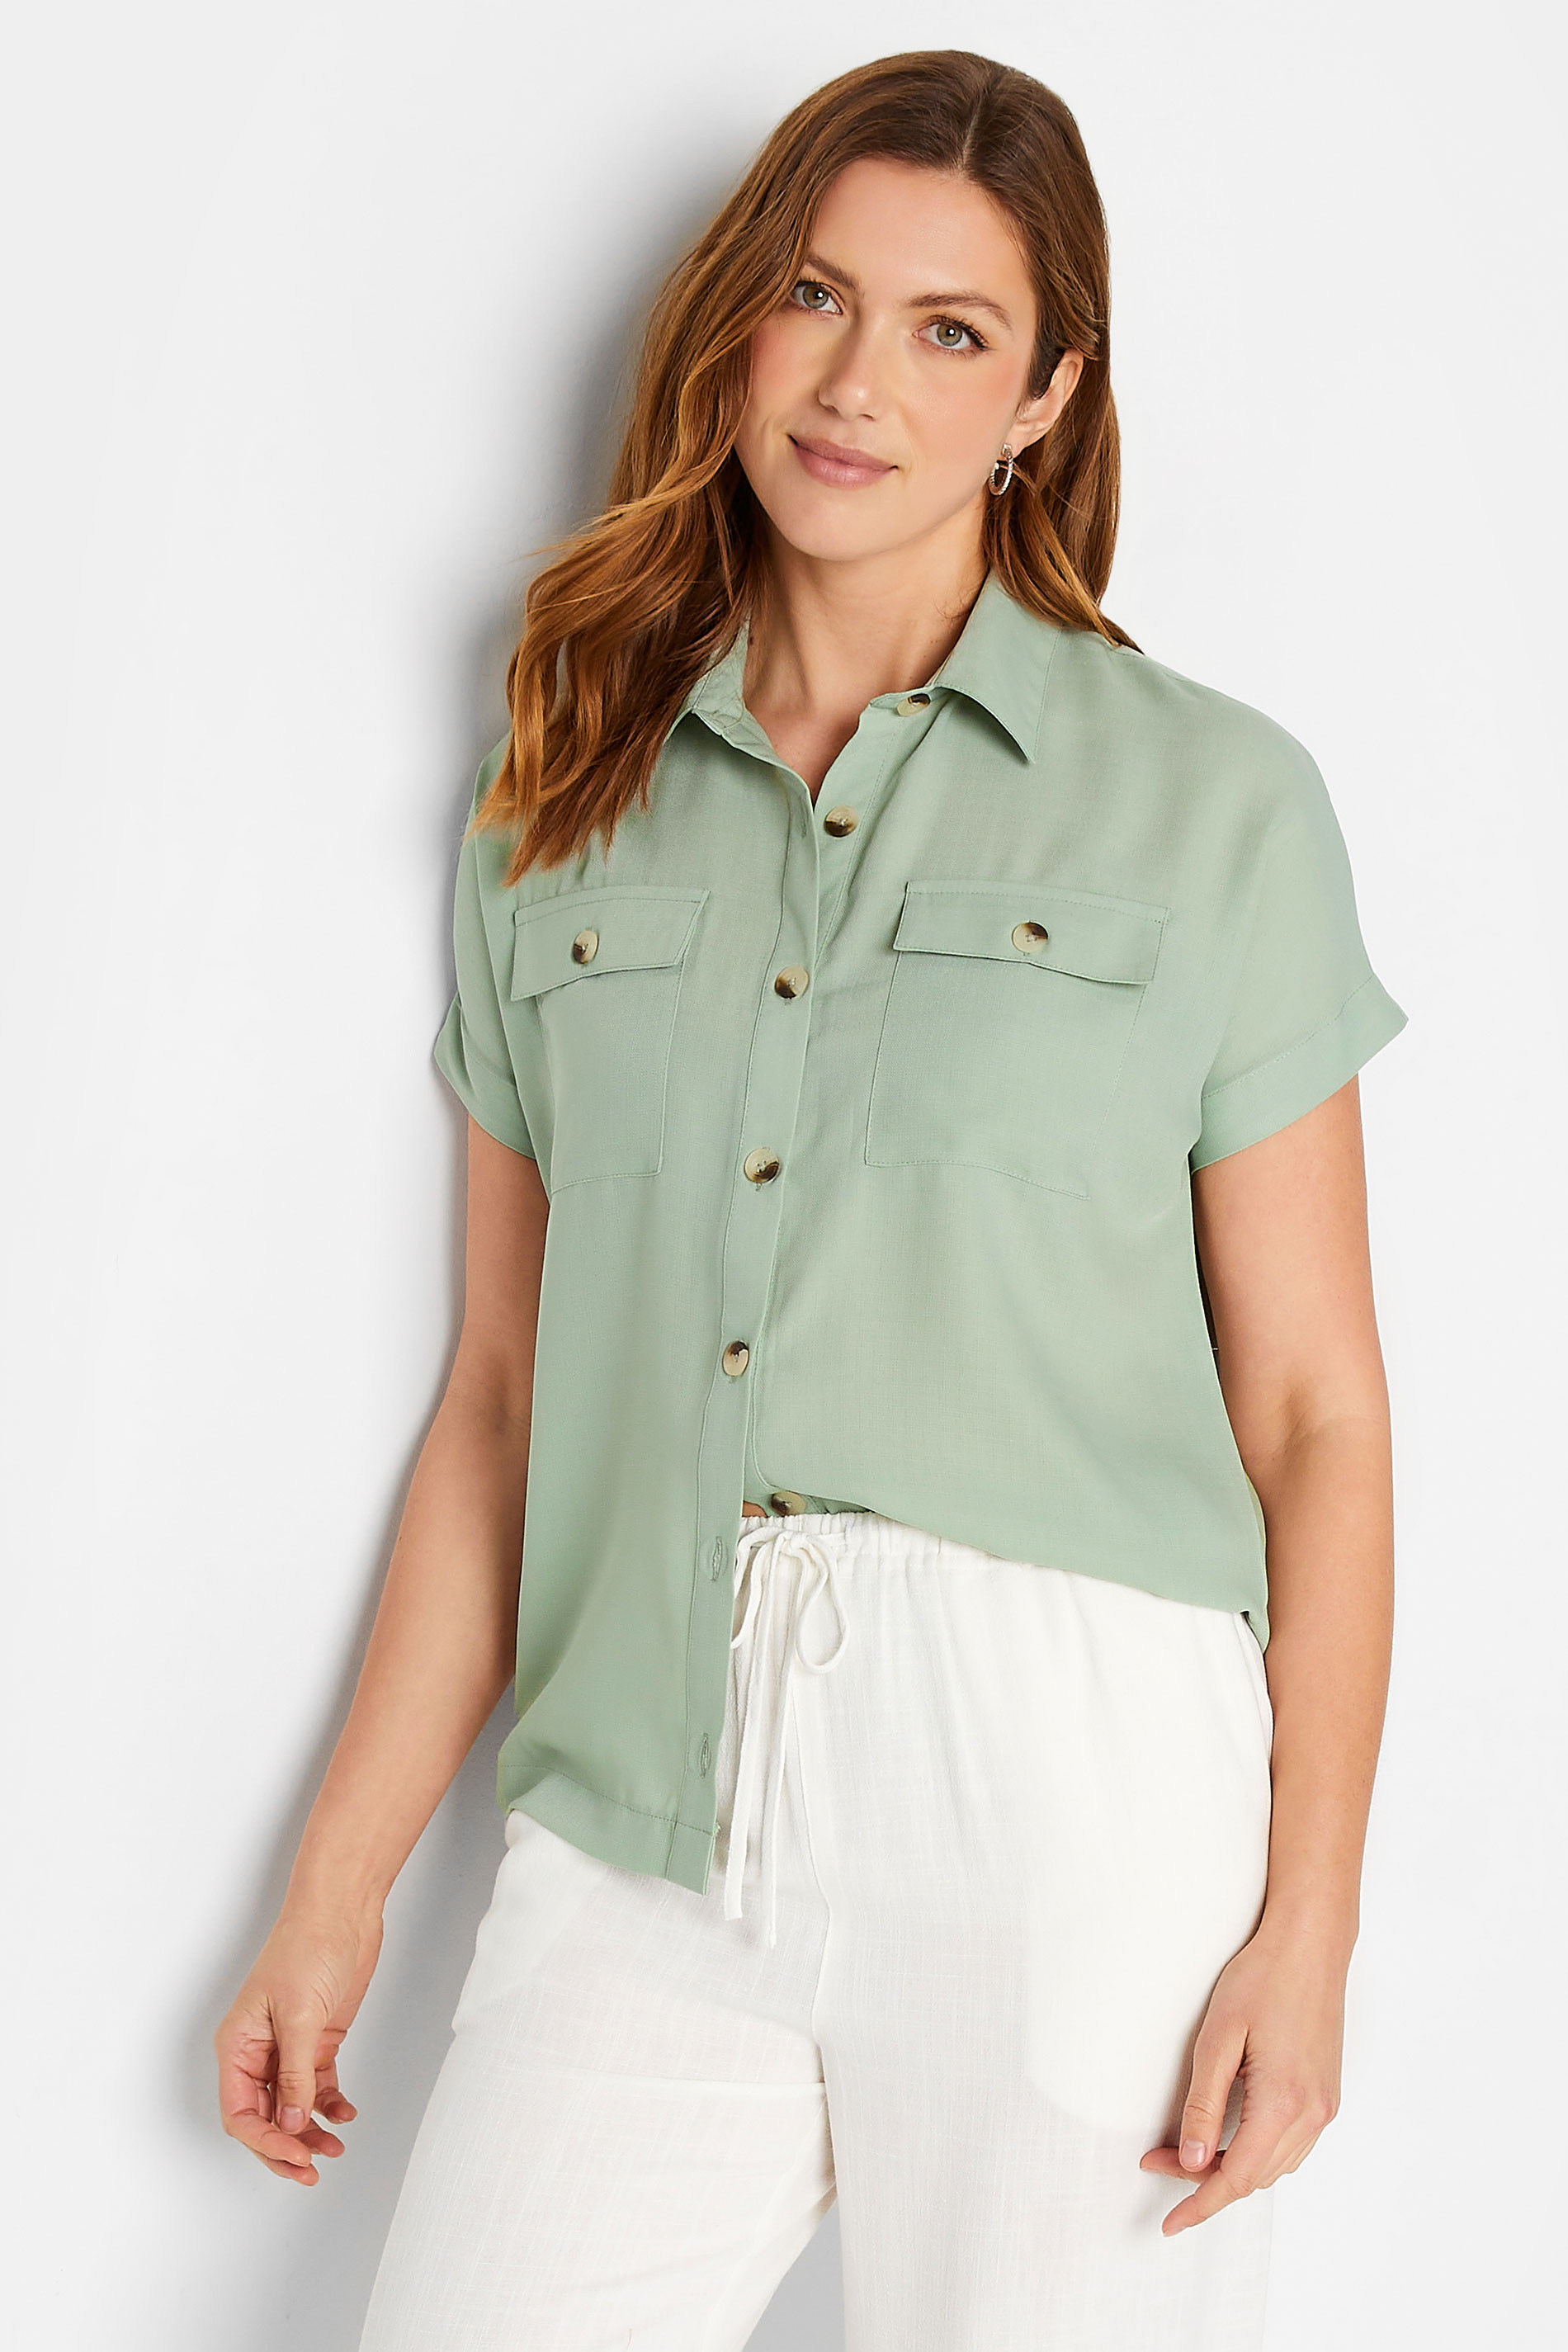 LTS Tall Women's Green Pocket Utility Shirt | Long Tall Sally 1